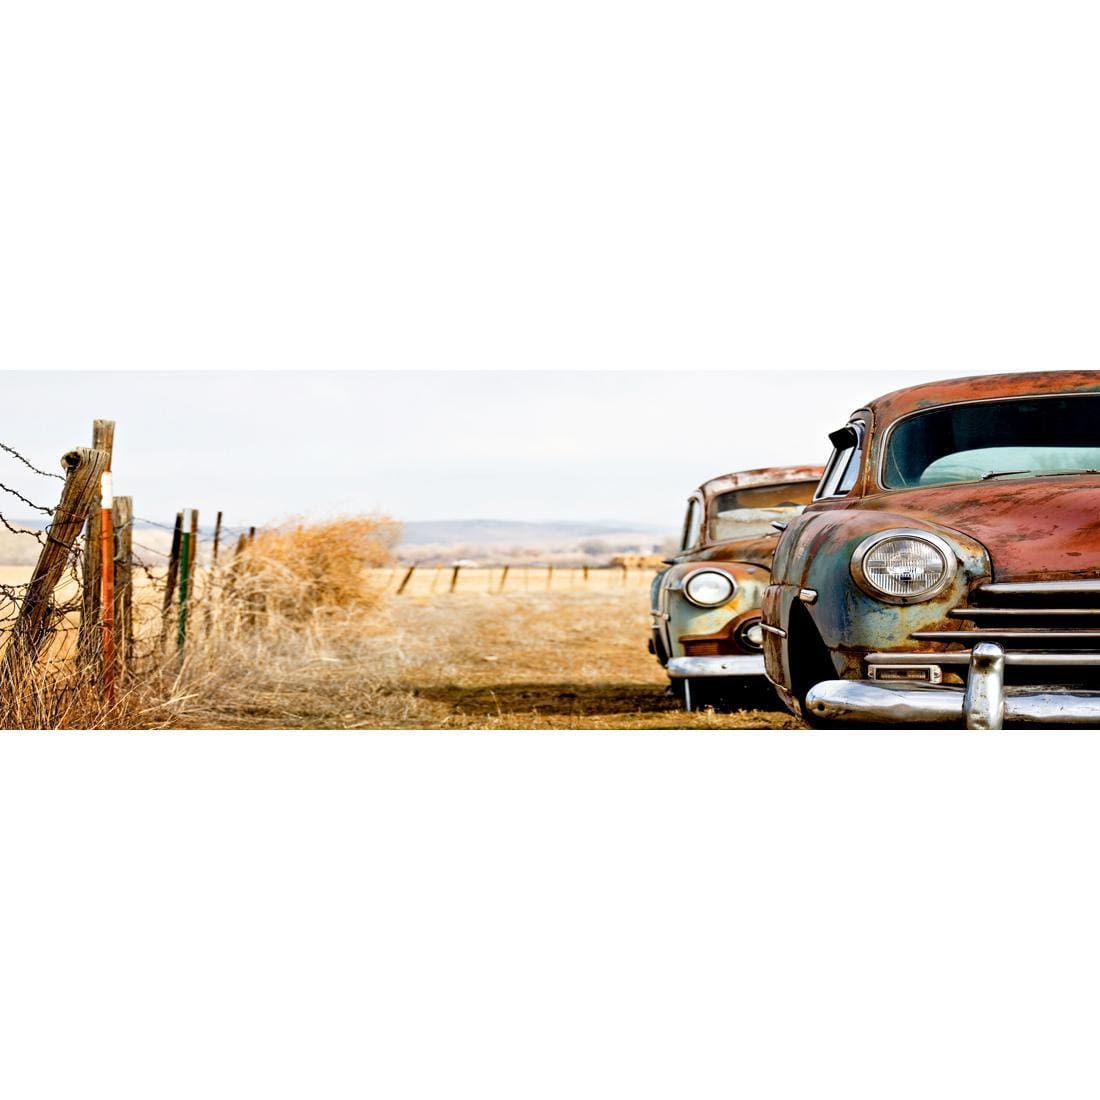 Rusty Cars, Original (Long) - wallart-australia - Canvas